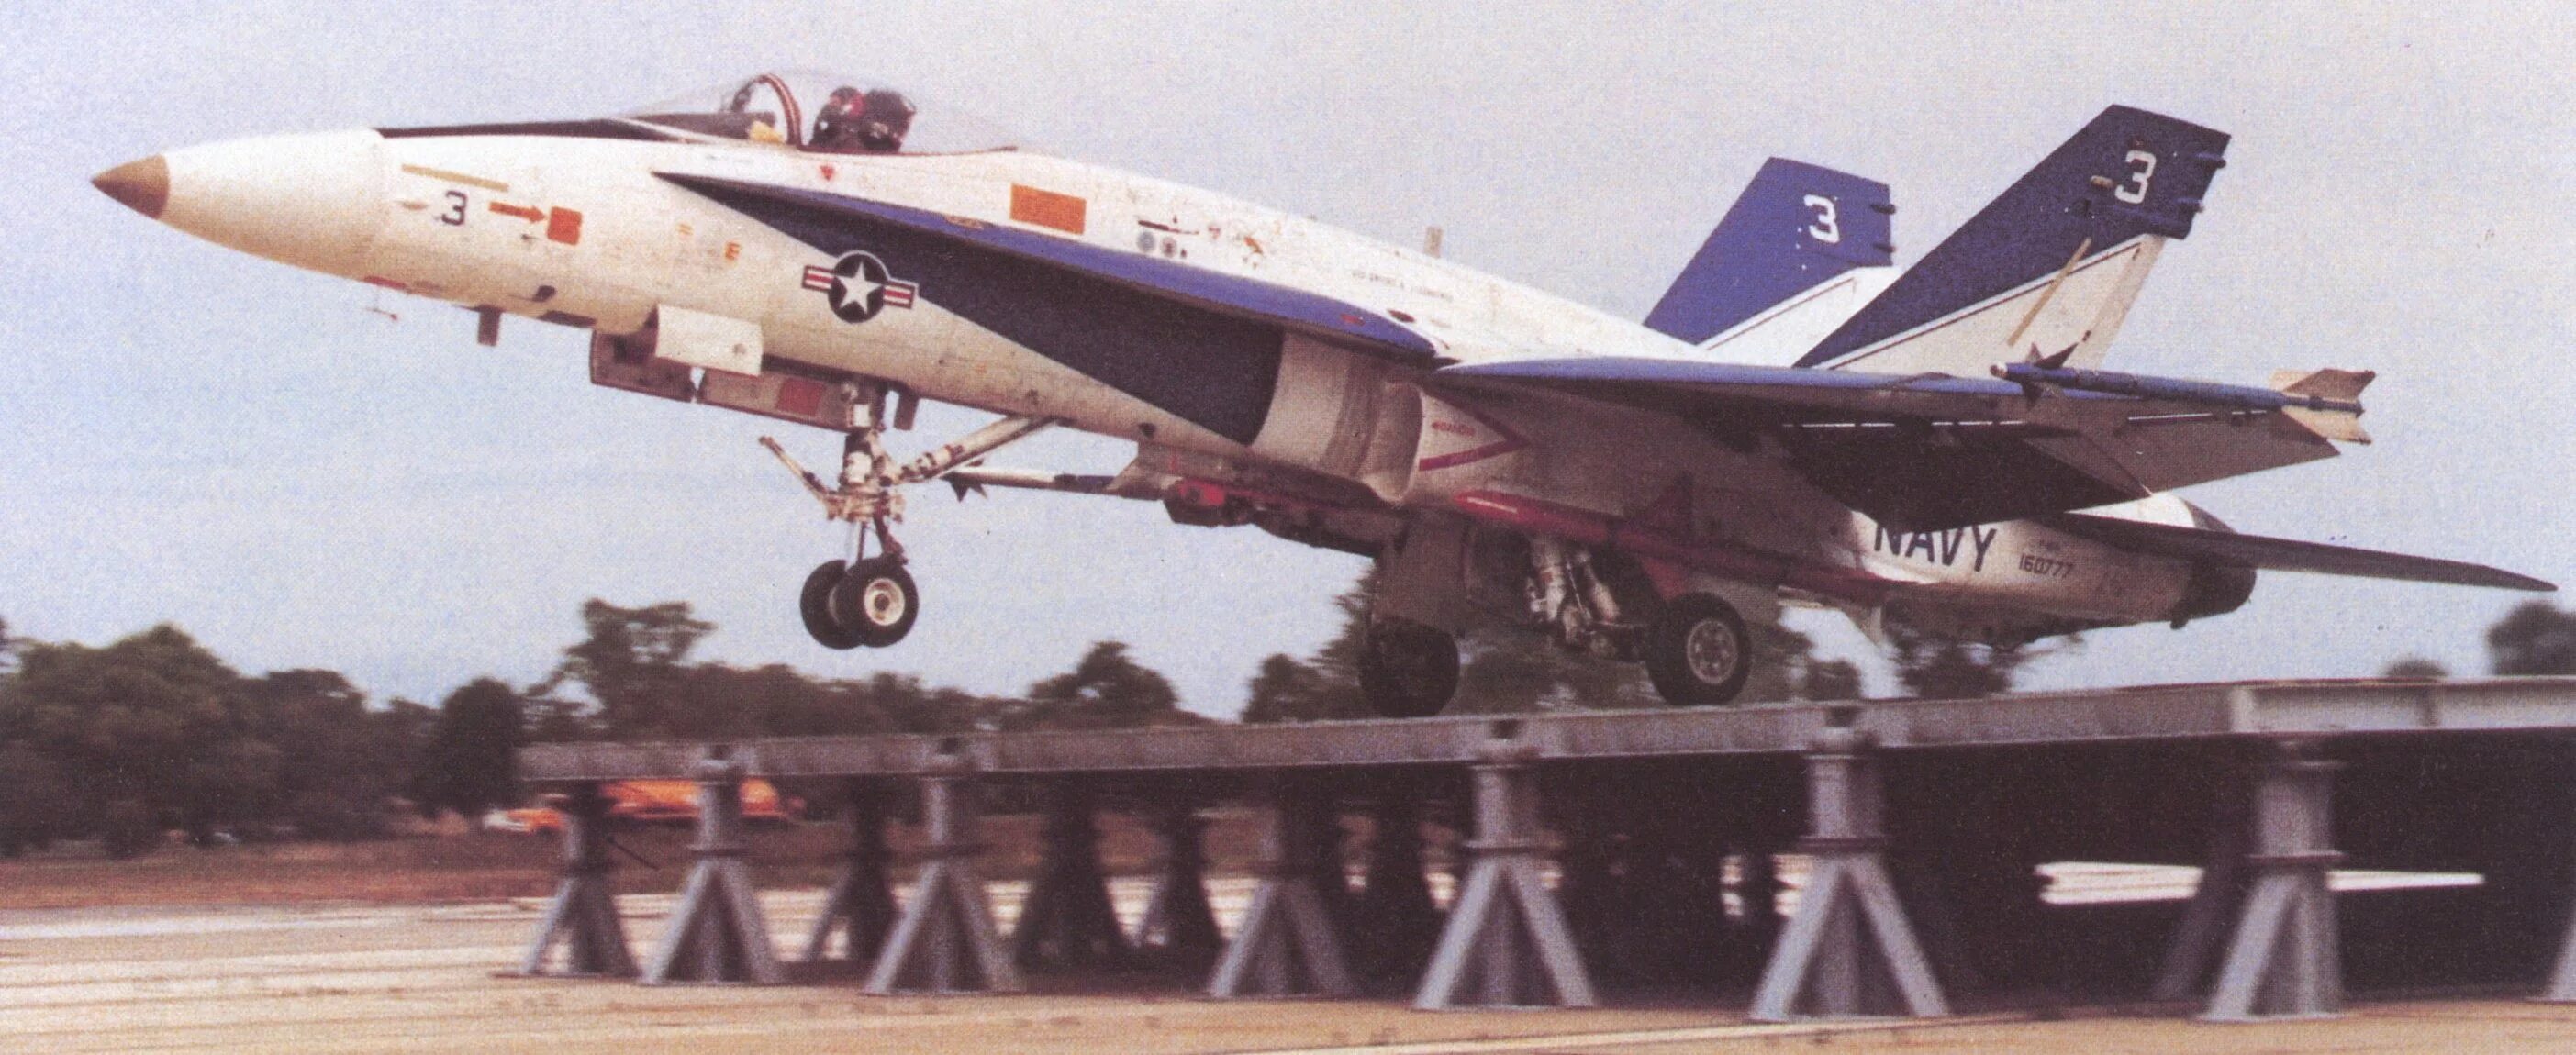 Летные испытания самолетов. Наземного трамплина т-1 миг-29. Взлет с наземного трамплина т-1 миг-29квп. Вертикальный взлёт Хорнет. 22 апреля 1996